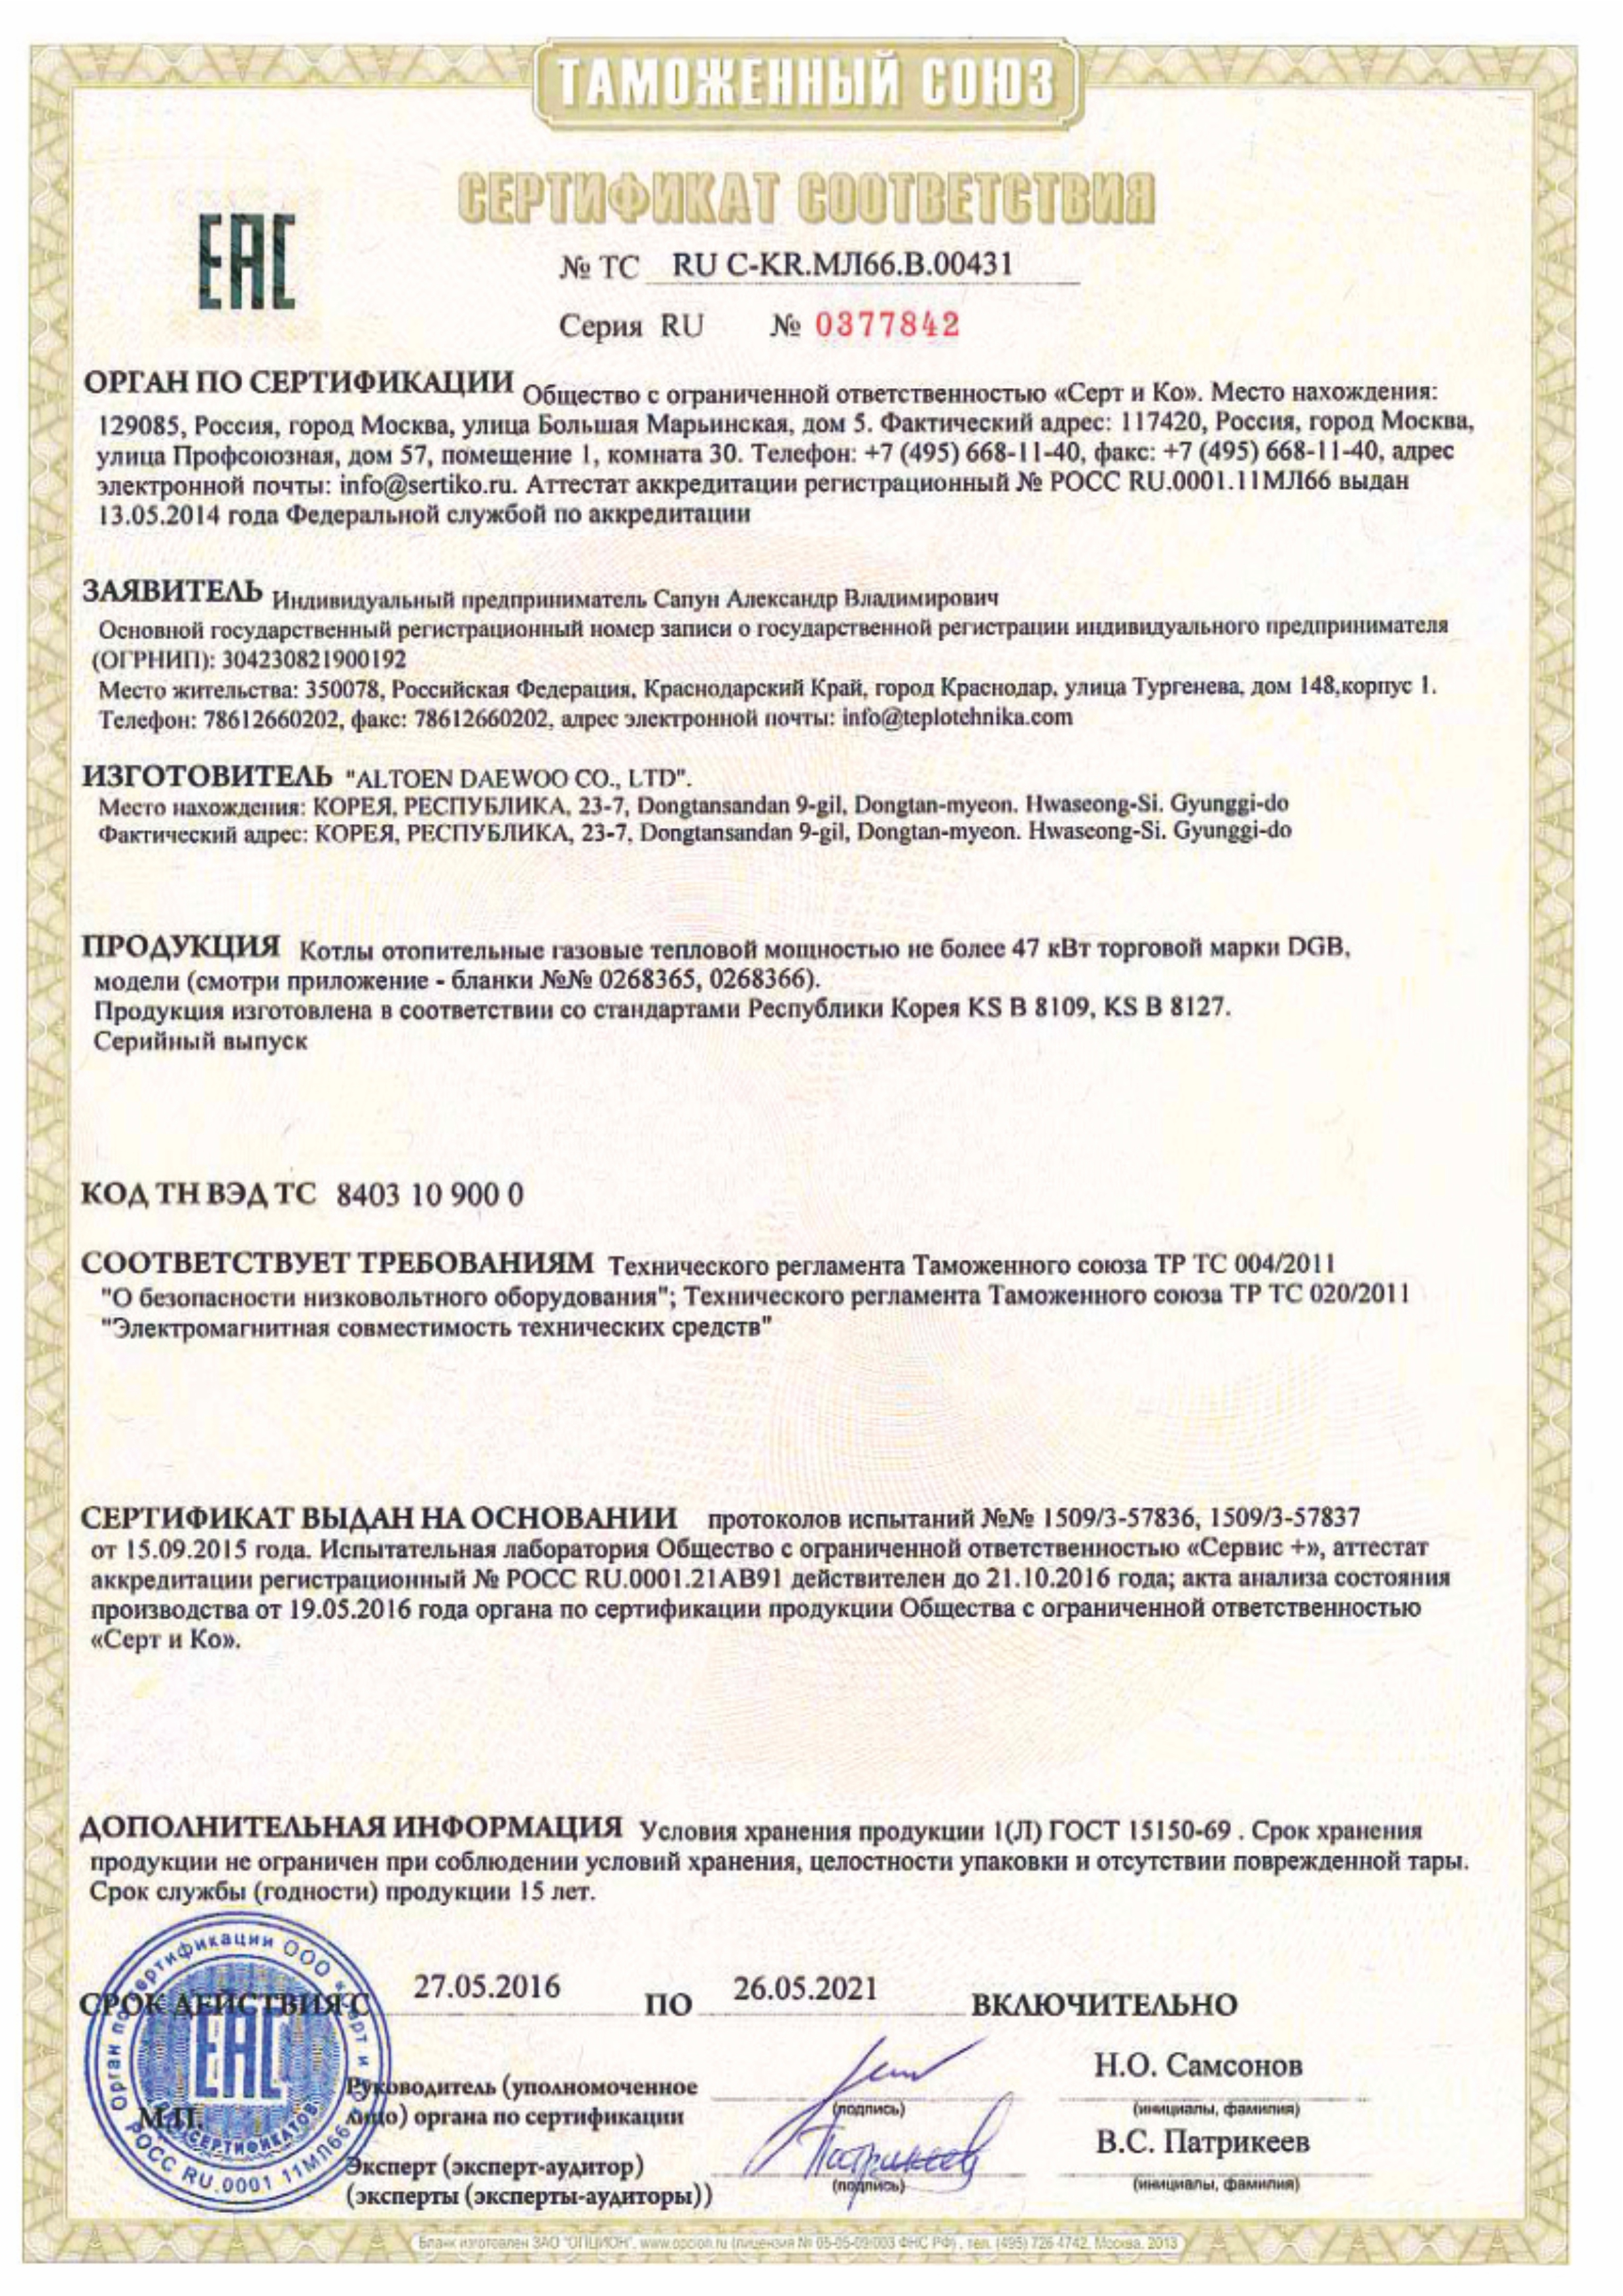 Сертификат соответствия для котлов Daewoo DGB MSC